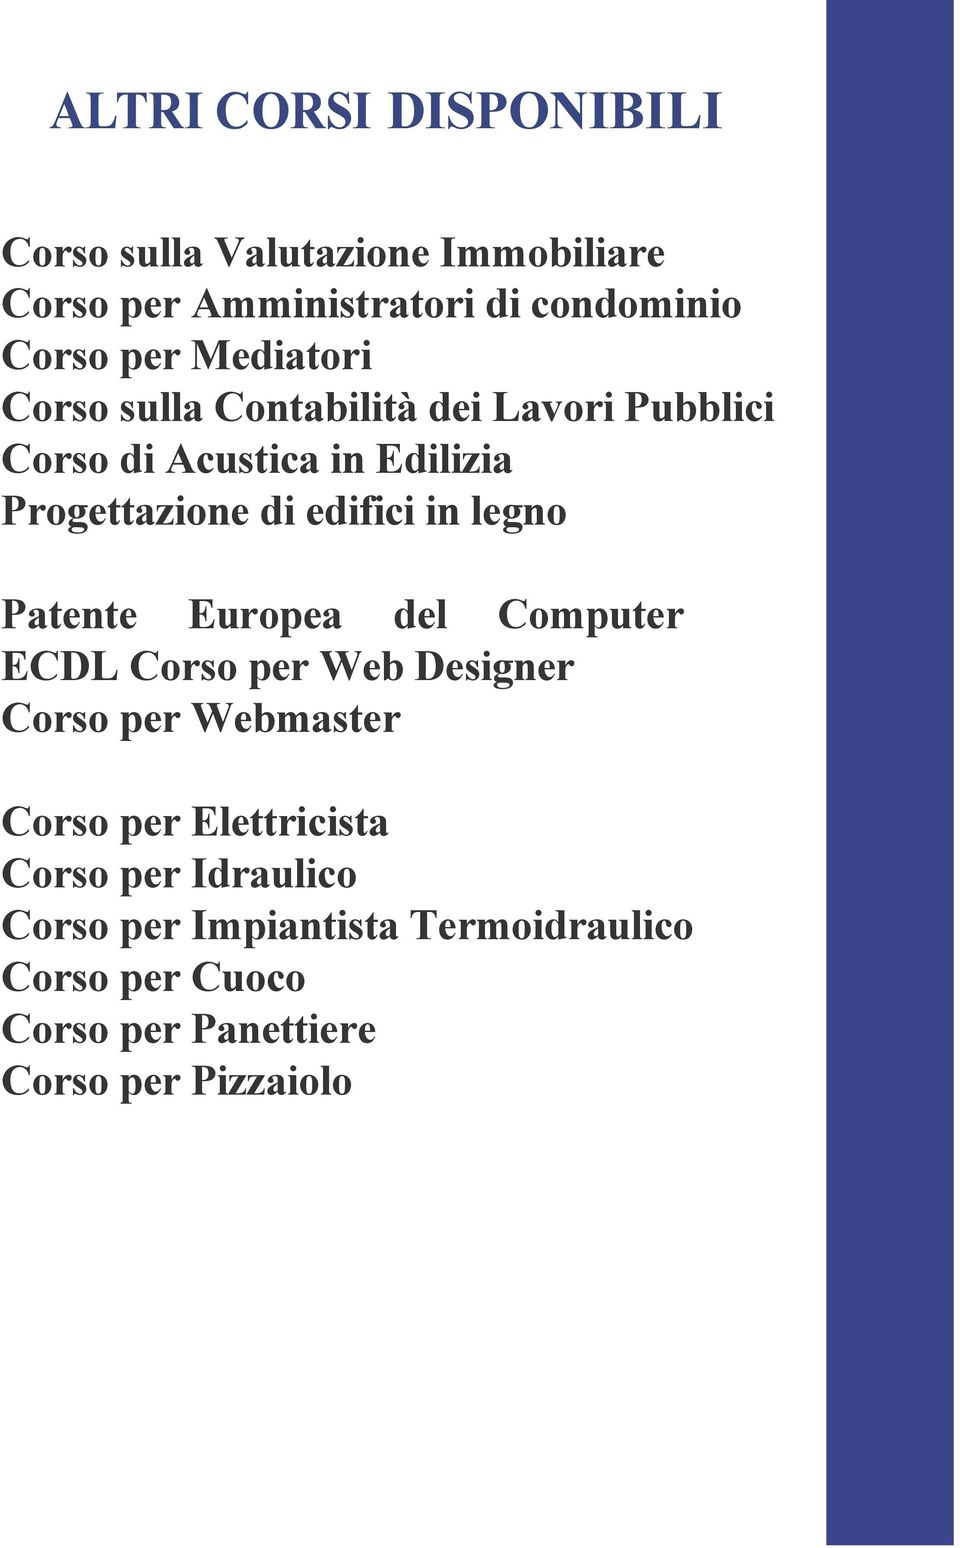 legno Patente Europea del Computer ECDL Corso per Web Designer Corso per Webmaster Corso per Elettricista